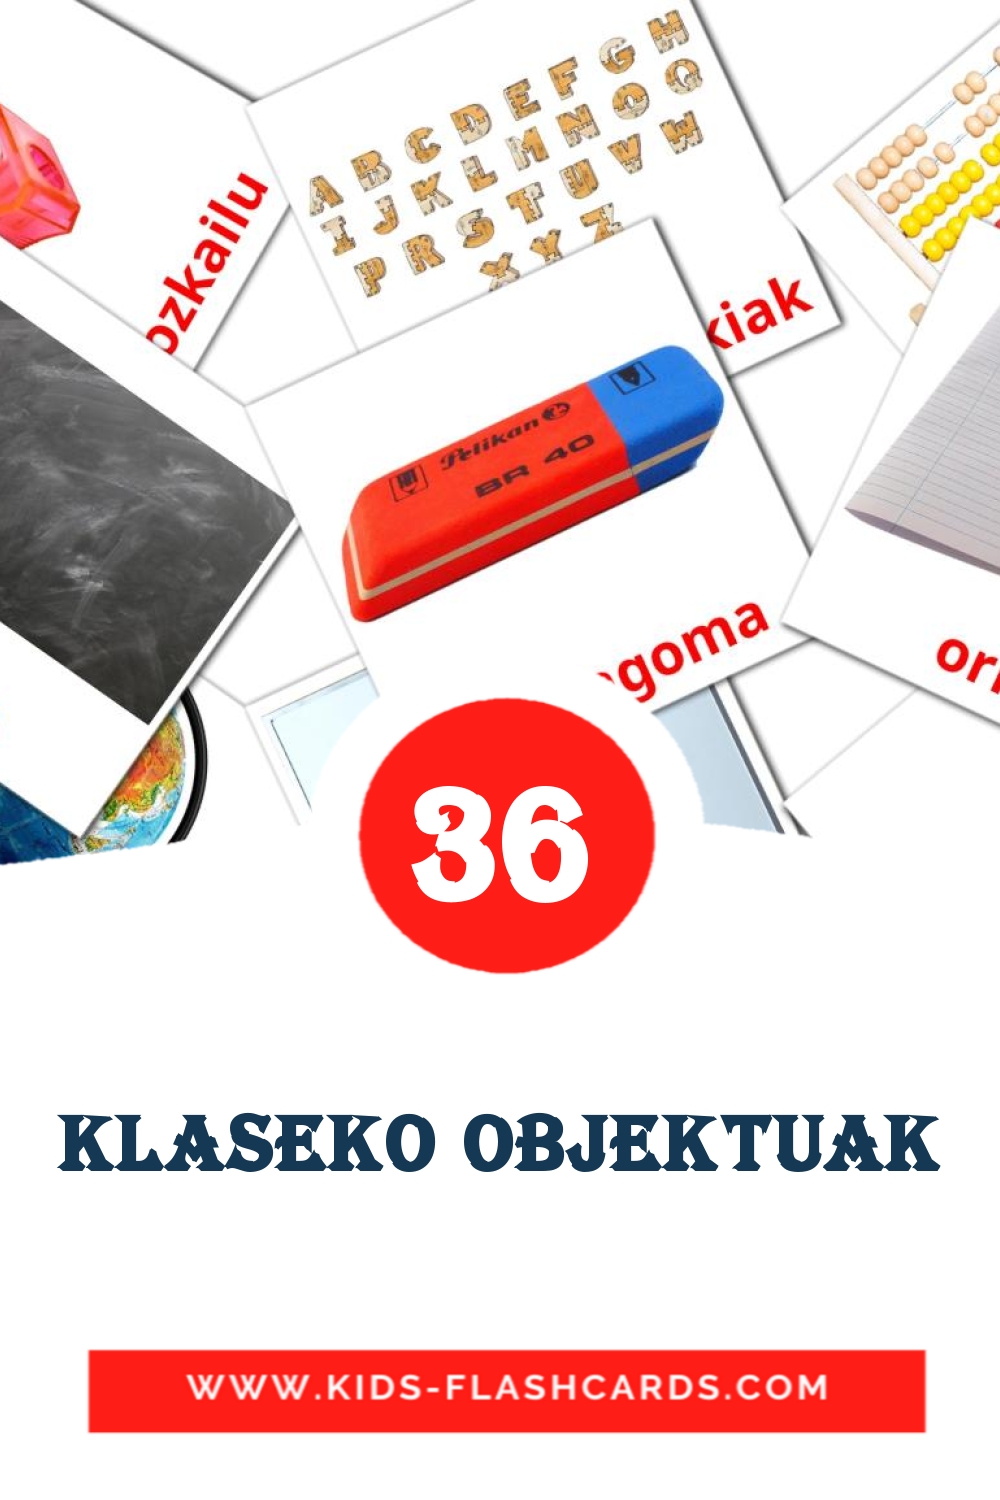 36 Klaseko objektuak fotokaarten voor kleuters in het baskisch